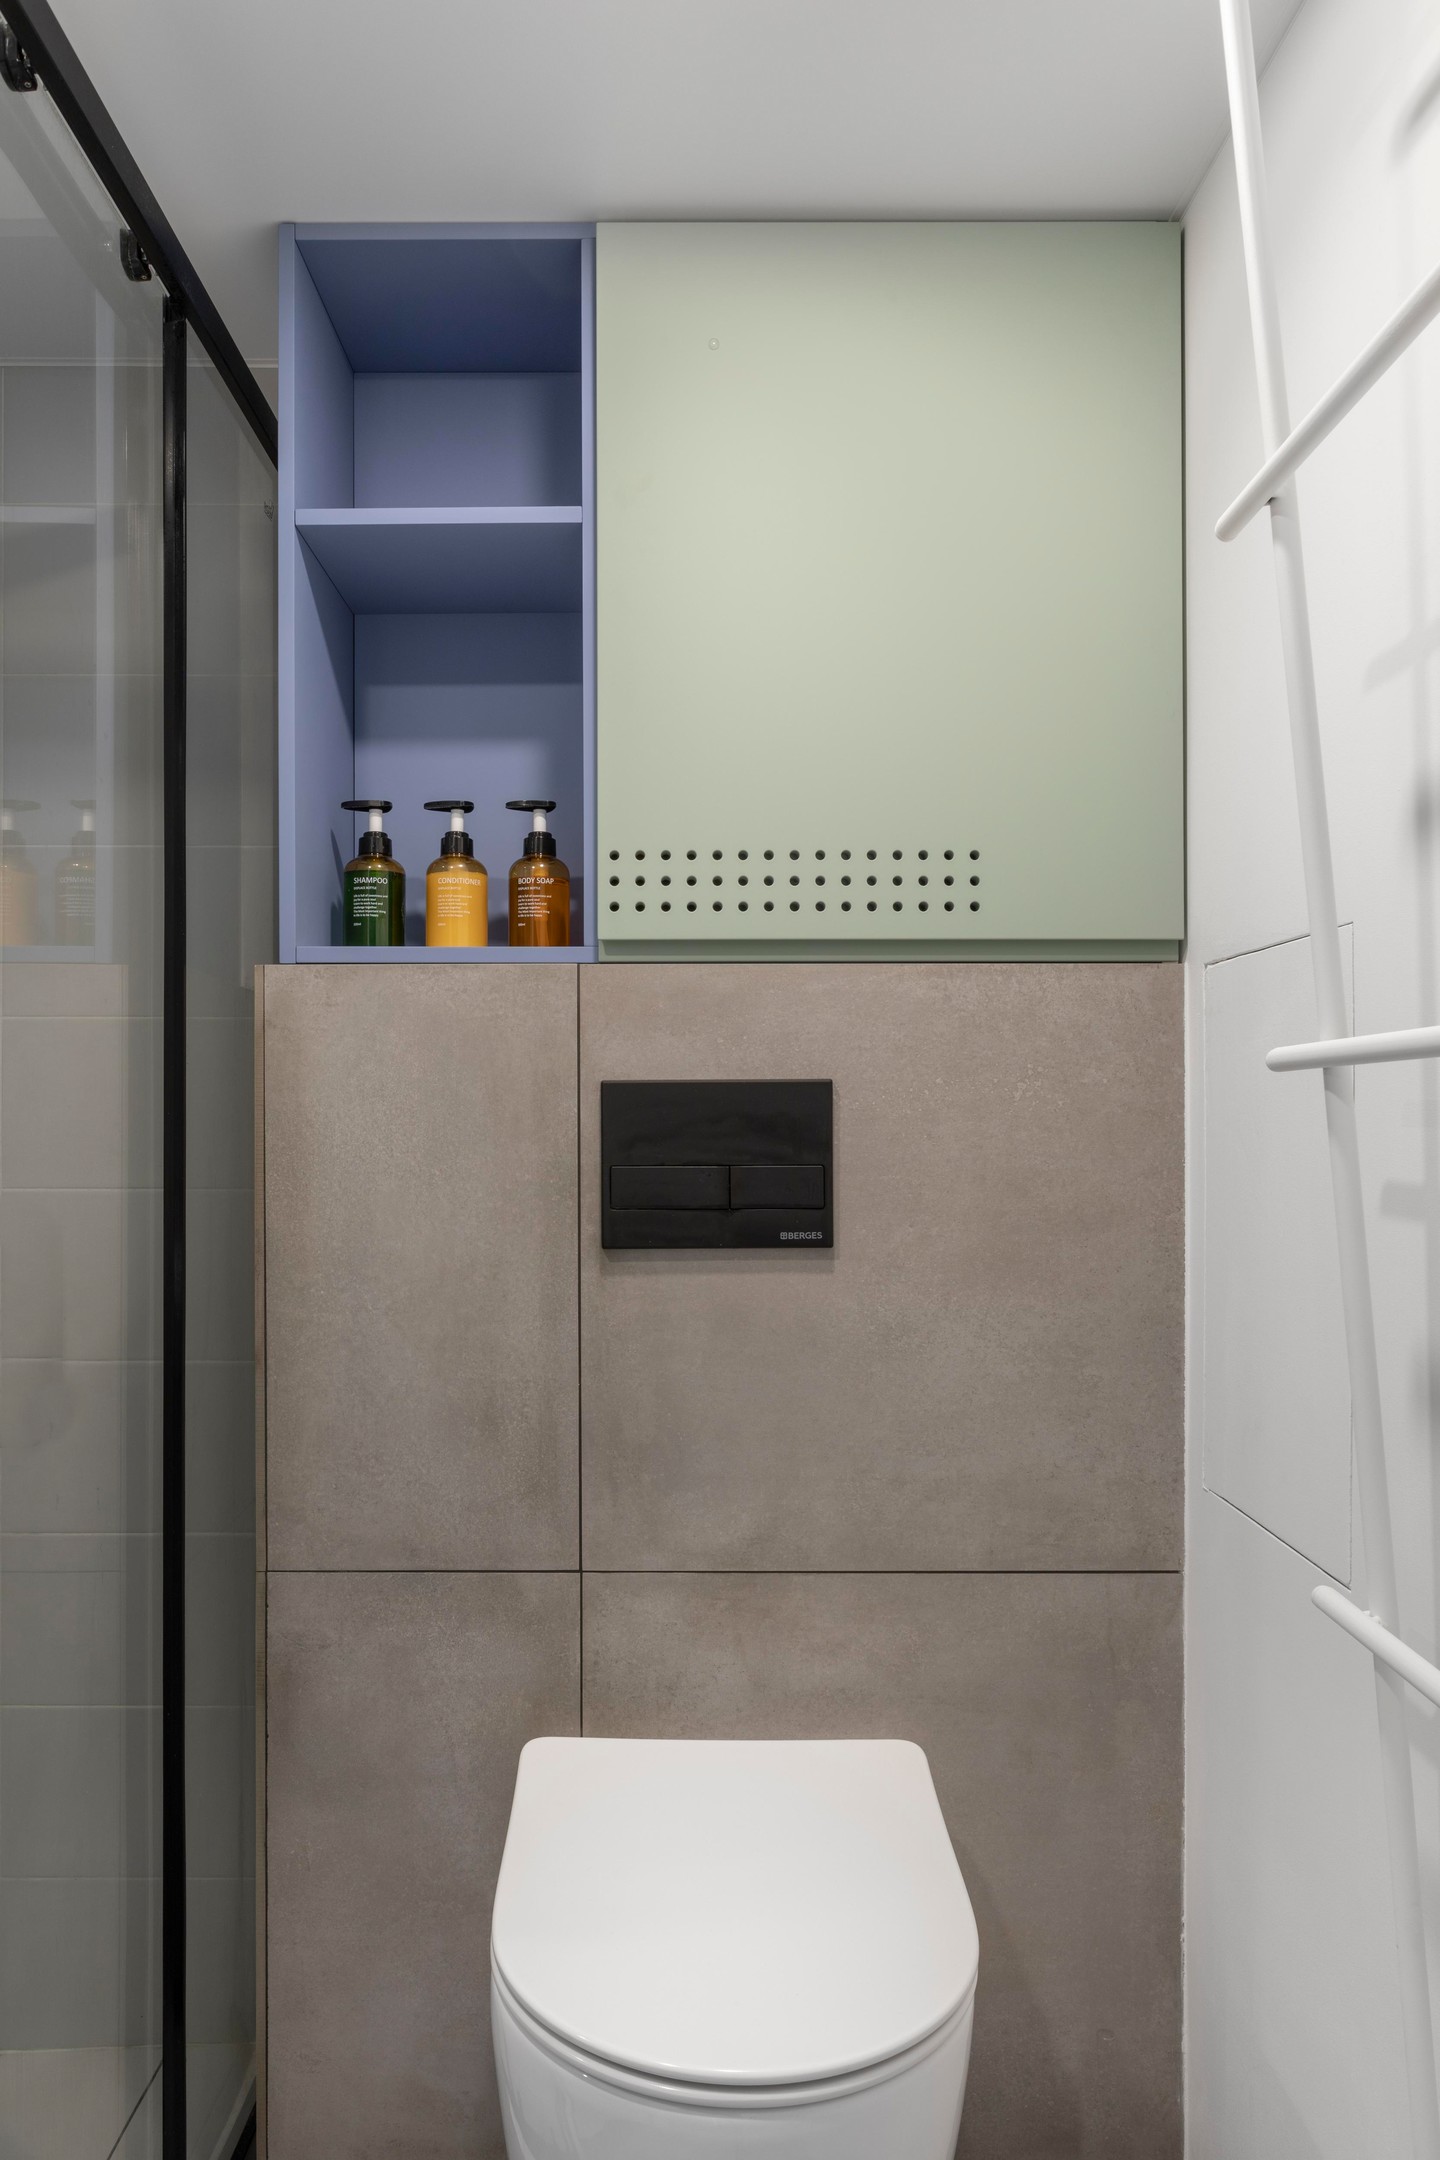 Toilet và phòng tắm được phân vùng bằng cửa trượt kính trong suốt. NTK lựa chọn kiểu bồn toilet gắn tường để tiết kiệm diện tích, đồng thời phía trên tường cũng bổ sung hệ thống tủ lưu trữ sơn sắc màu nhẹ nhàng và đẹp mắt.